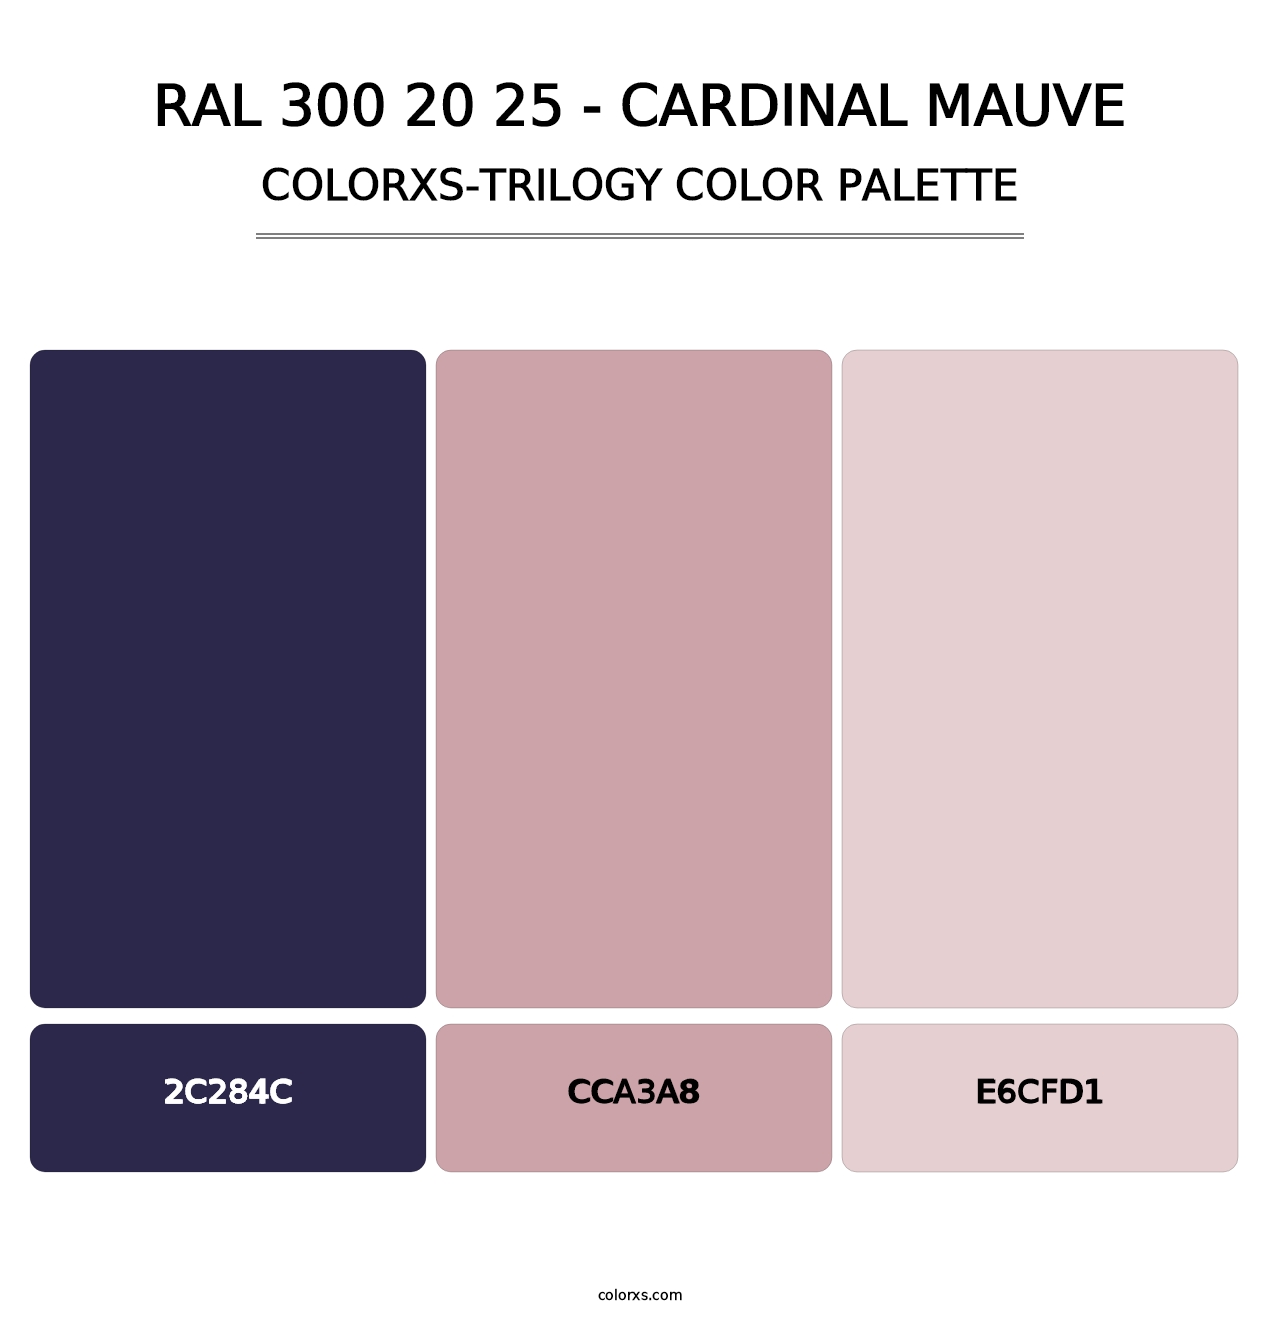 RAL 300 20 25 - Cardinal Mauve - Colorxs Trilogy Palette